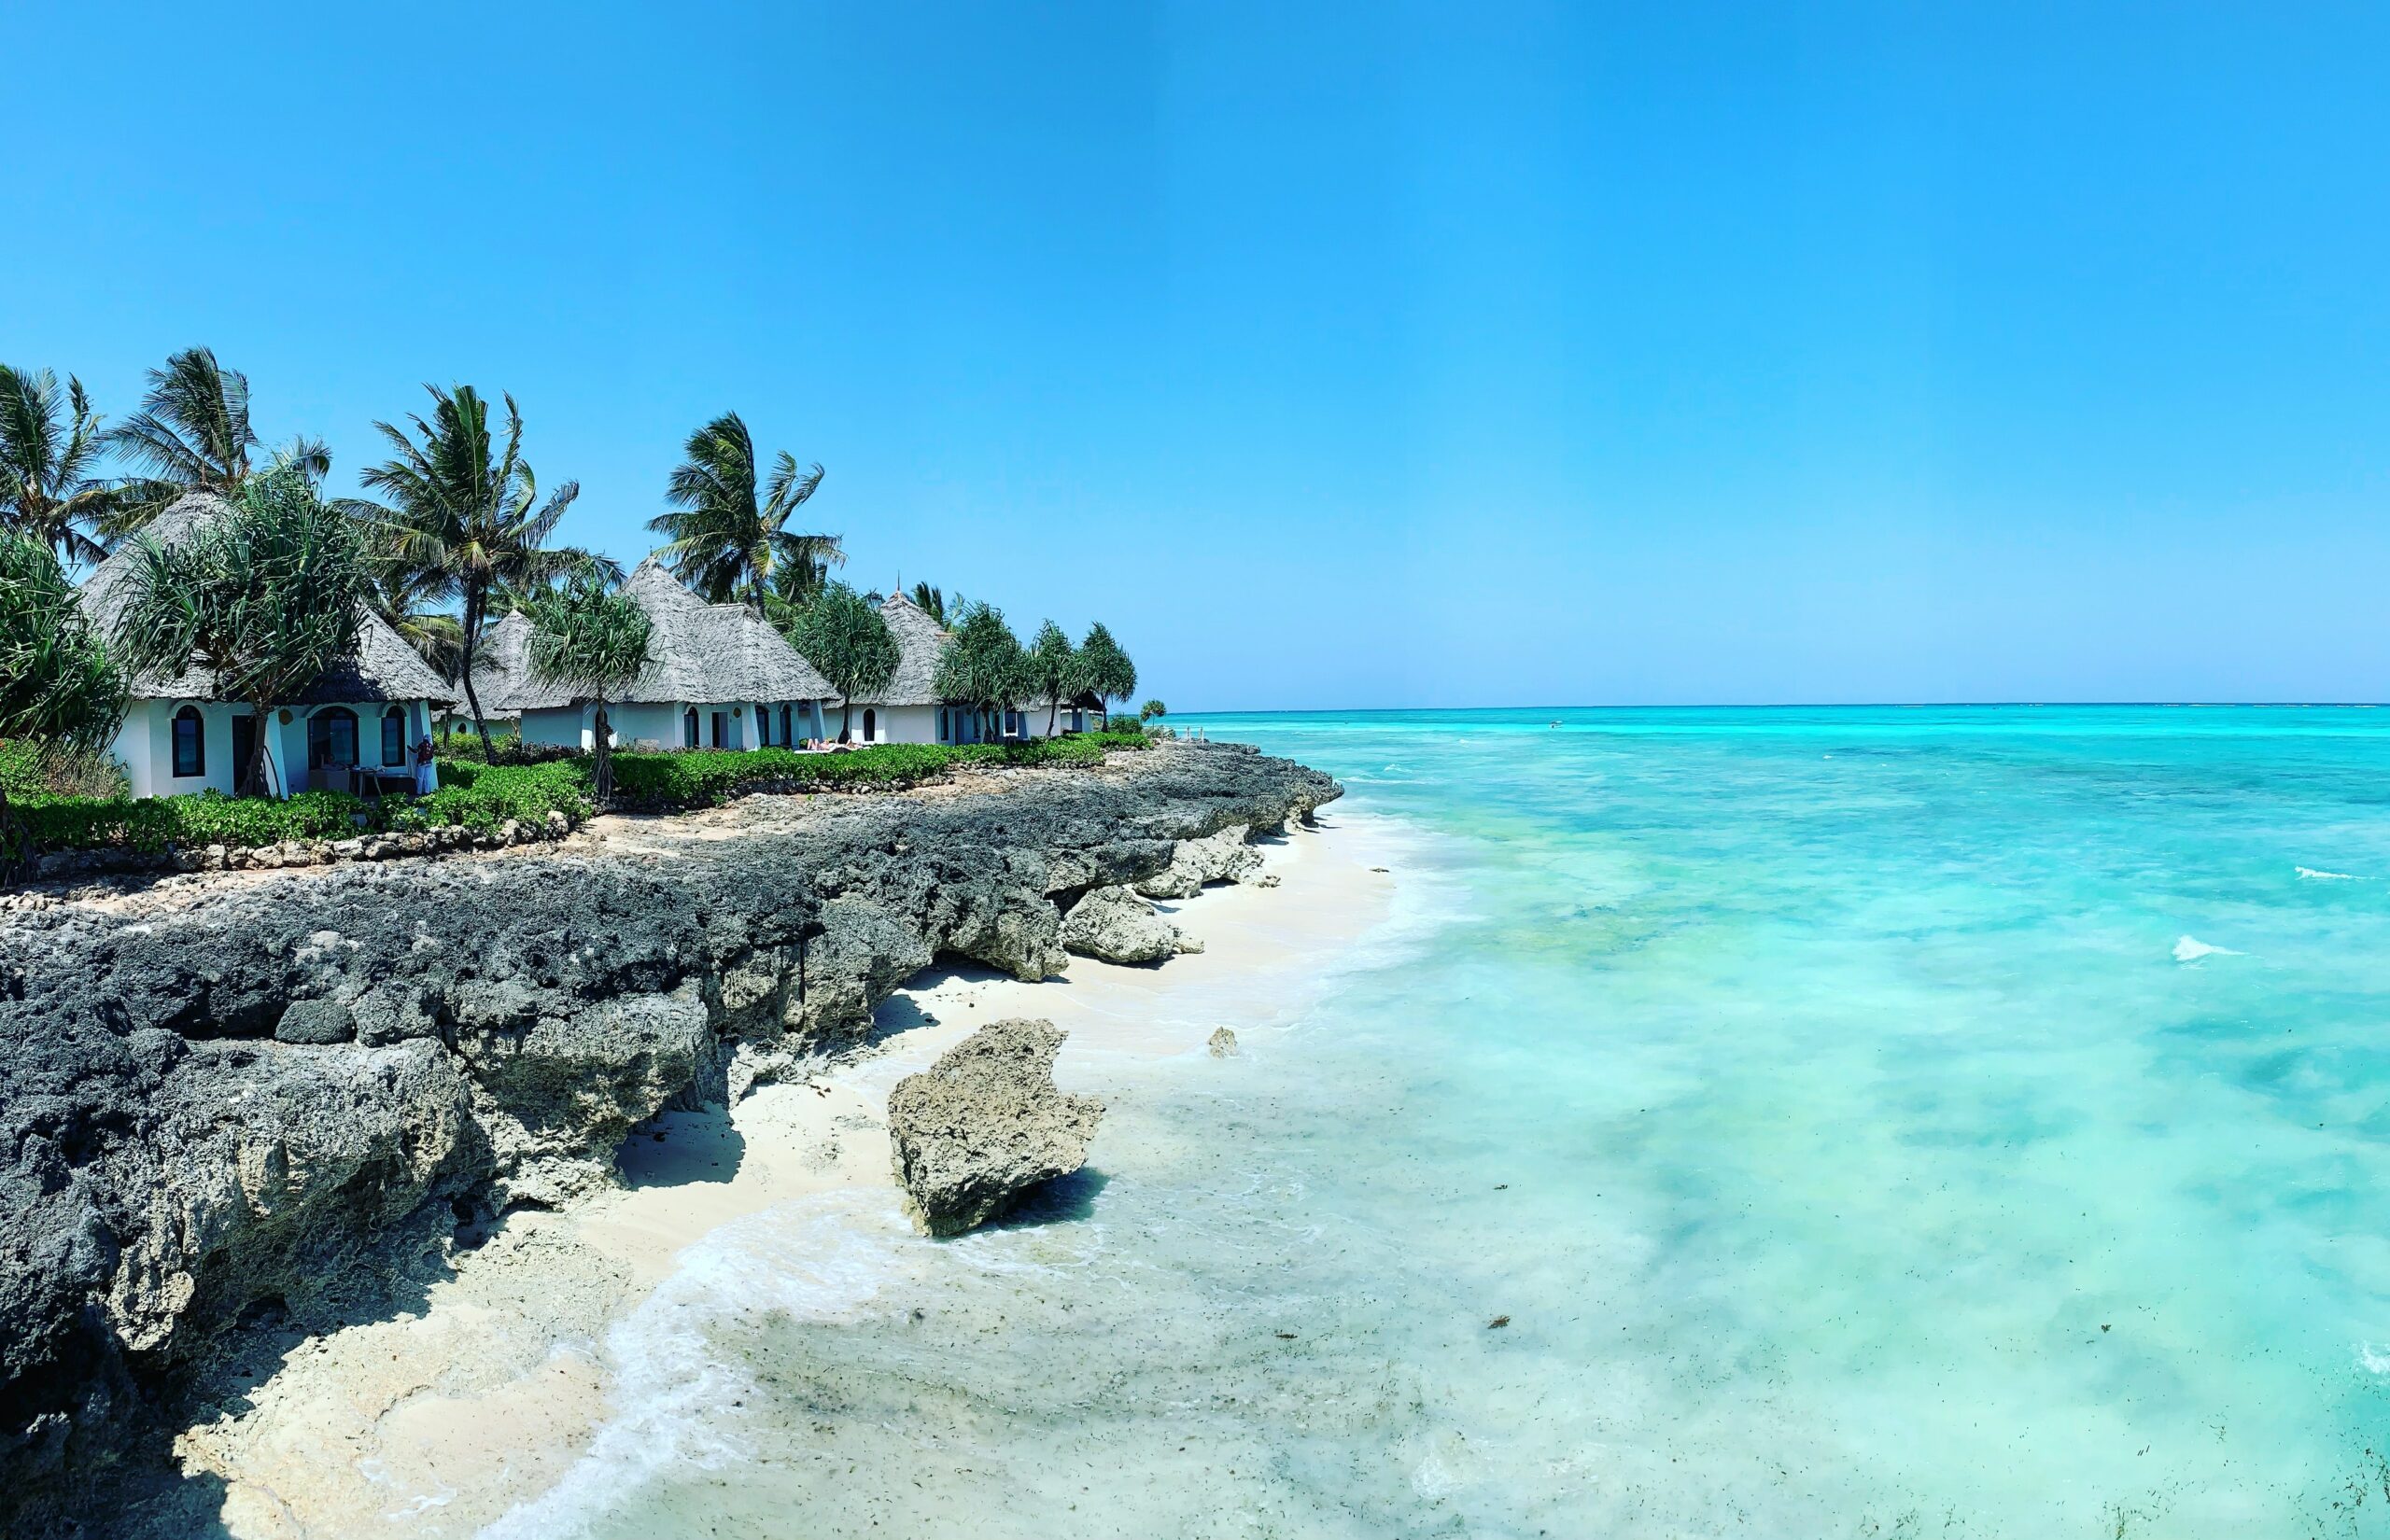 Bude Zanzibar destinací letošní zimy? Zájem Čechů se zvyšuje